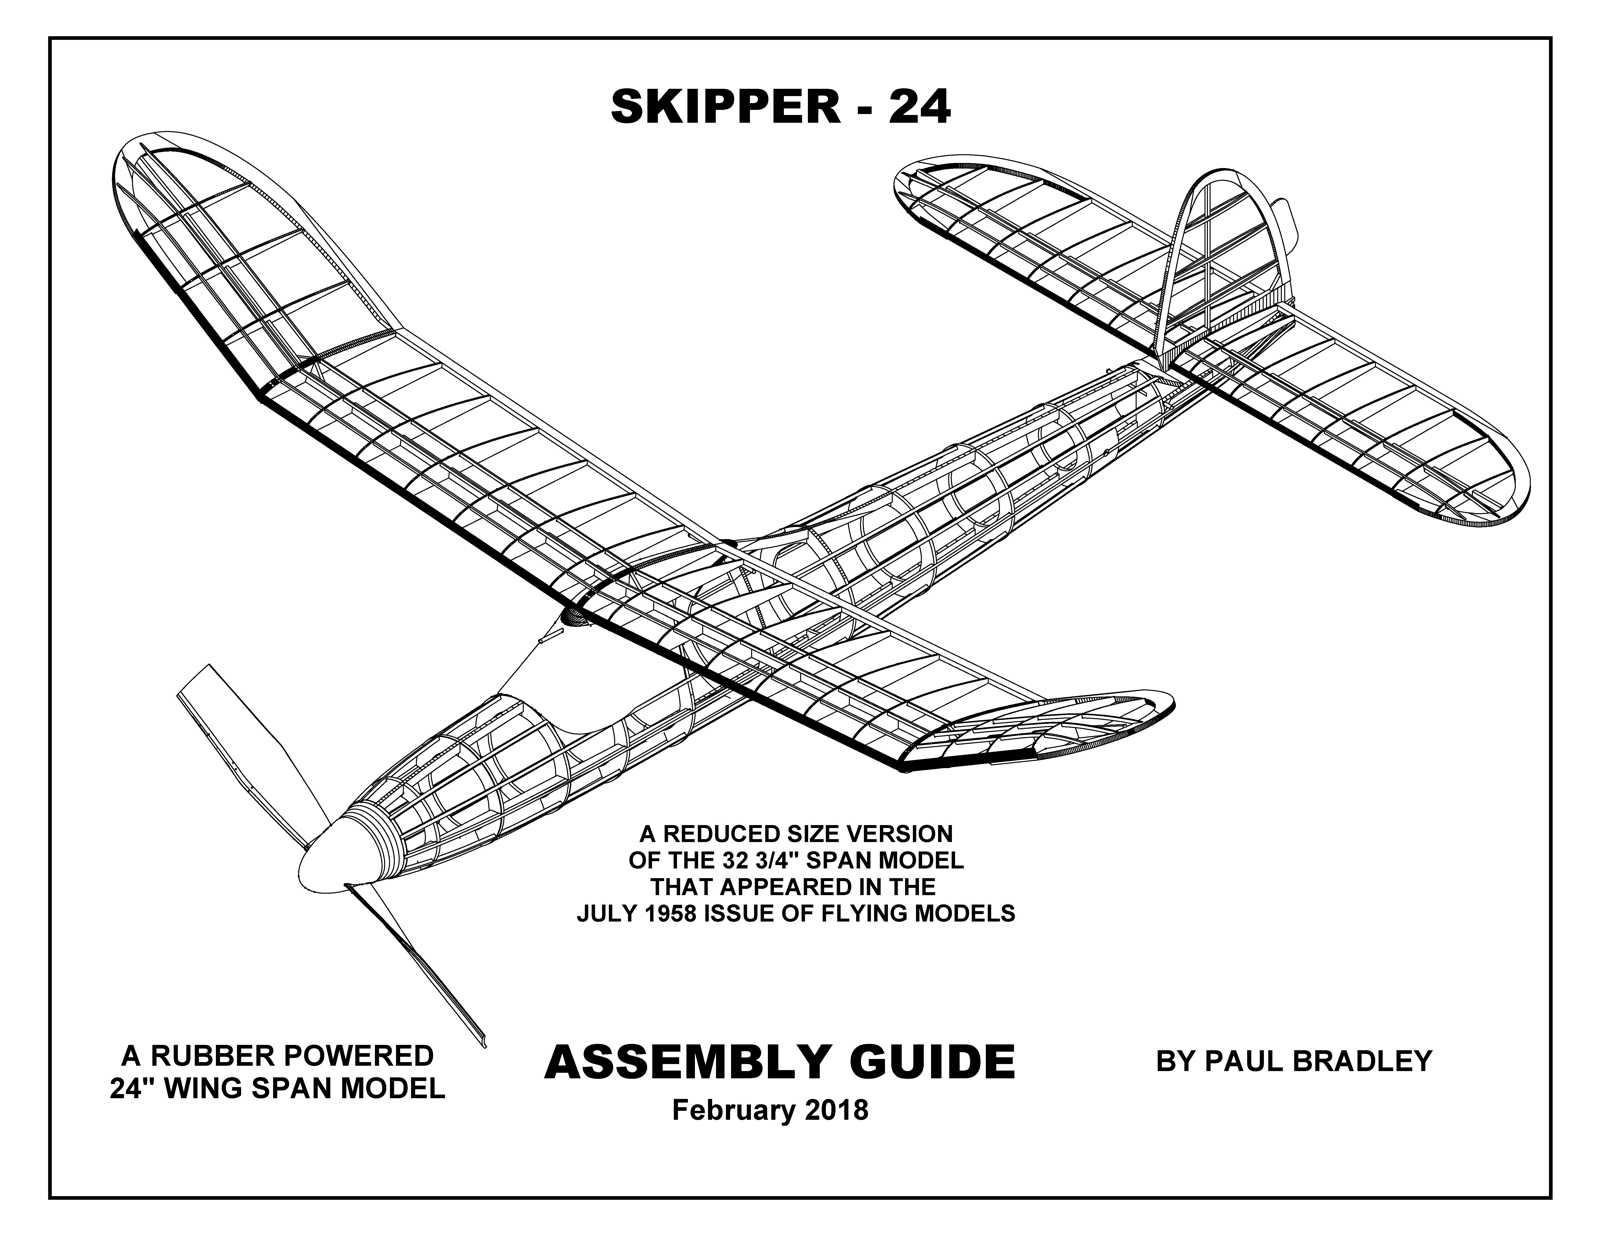 https://0201.nccdn.net/1_2/000/000/103/90d/Skipper-24-Assembly-Guide-1600x1236.jpg